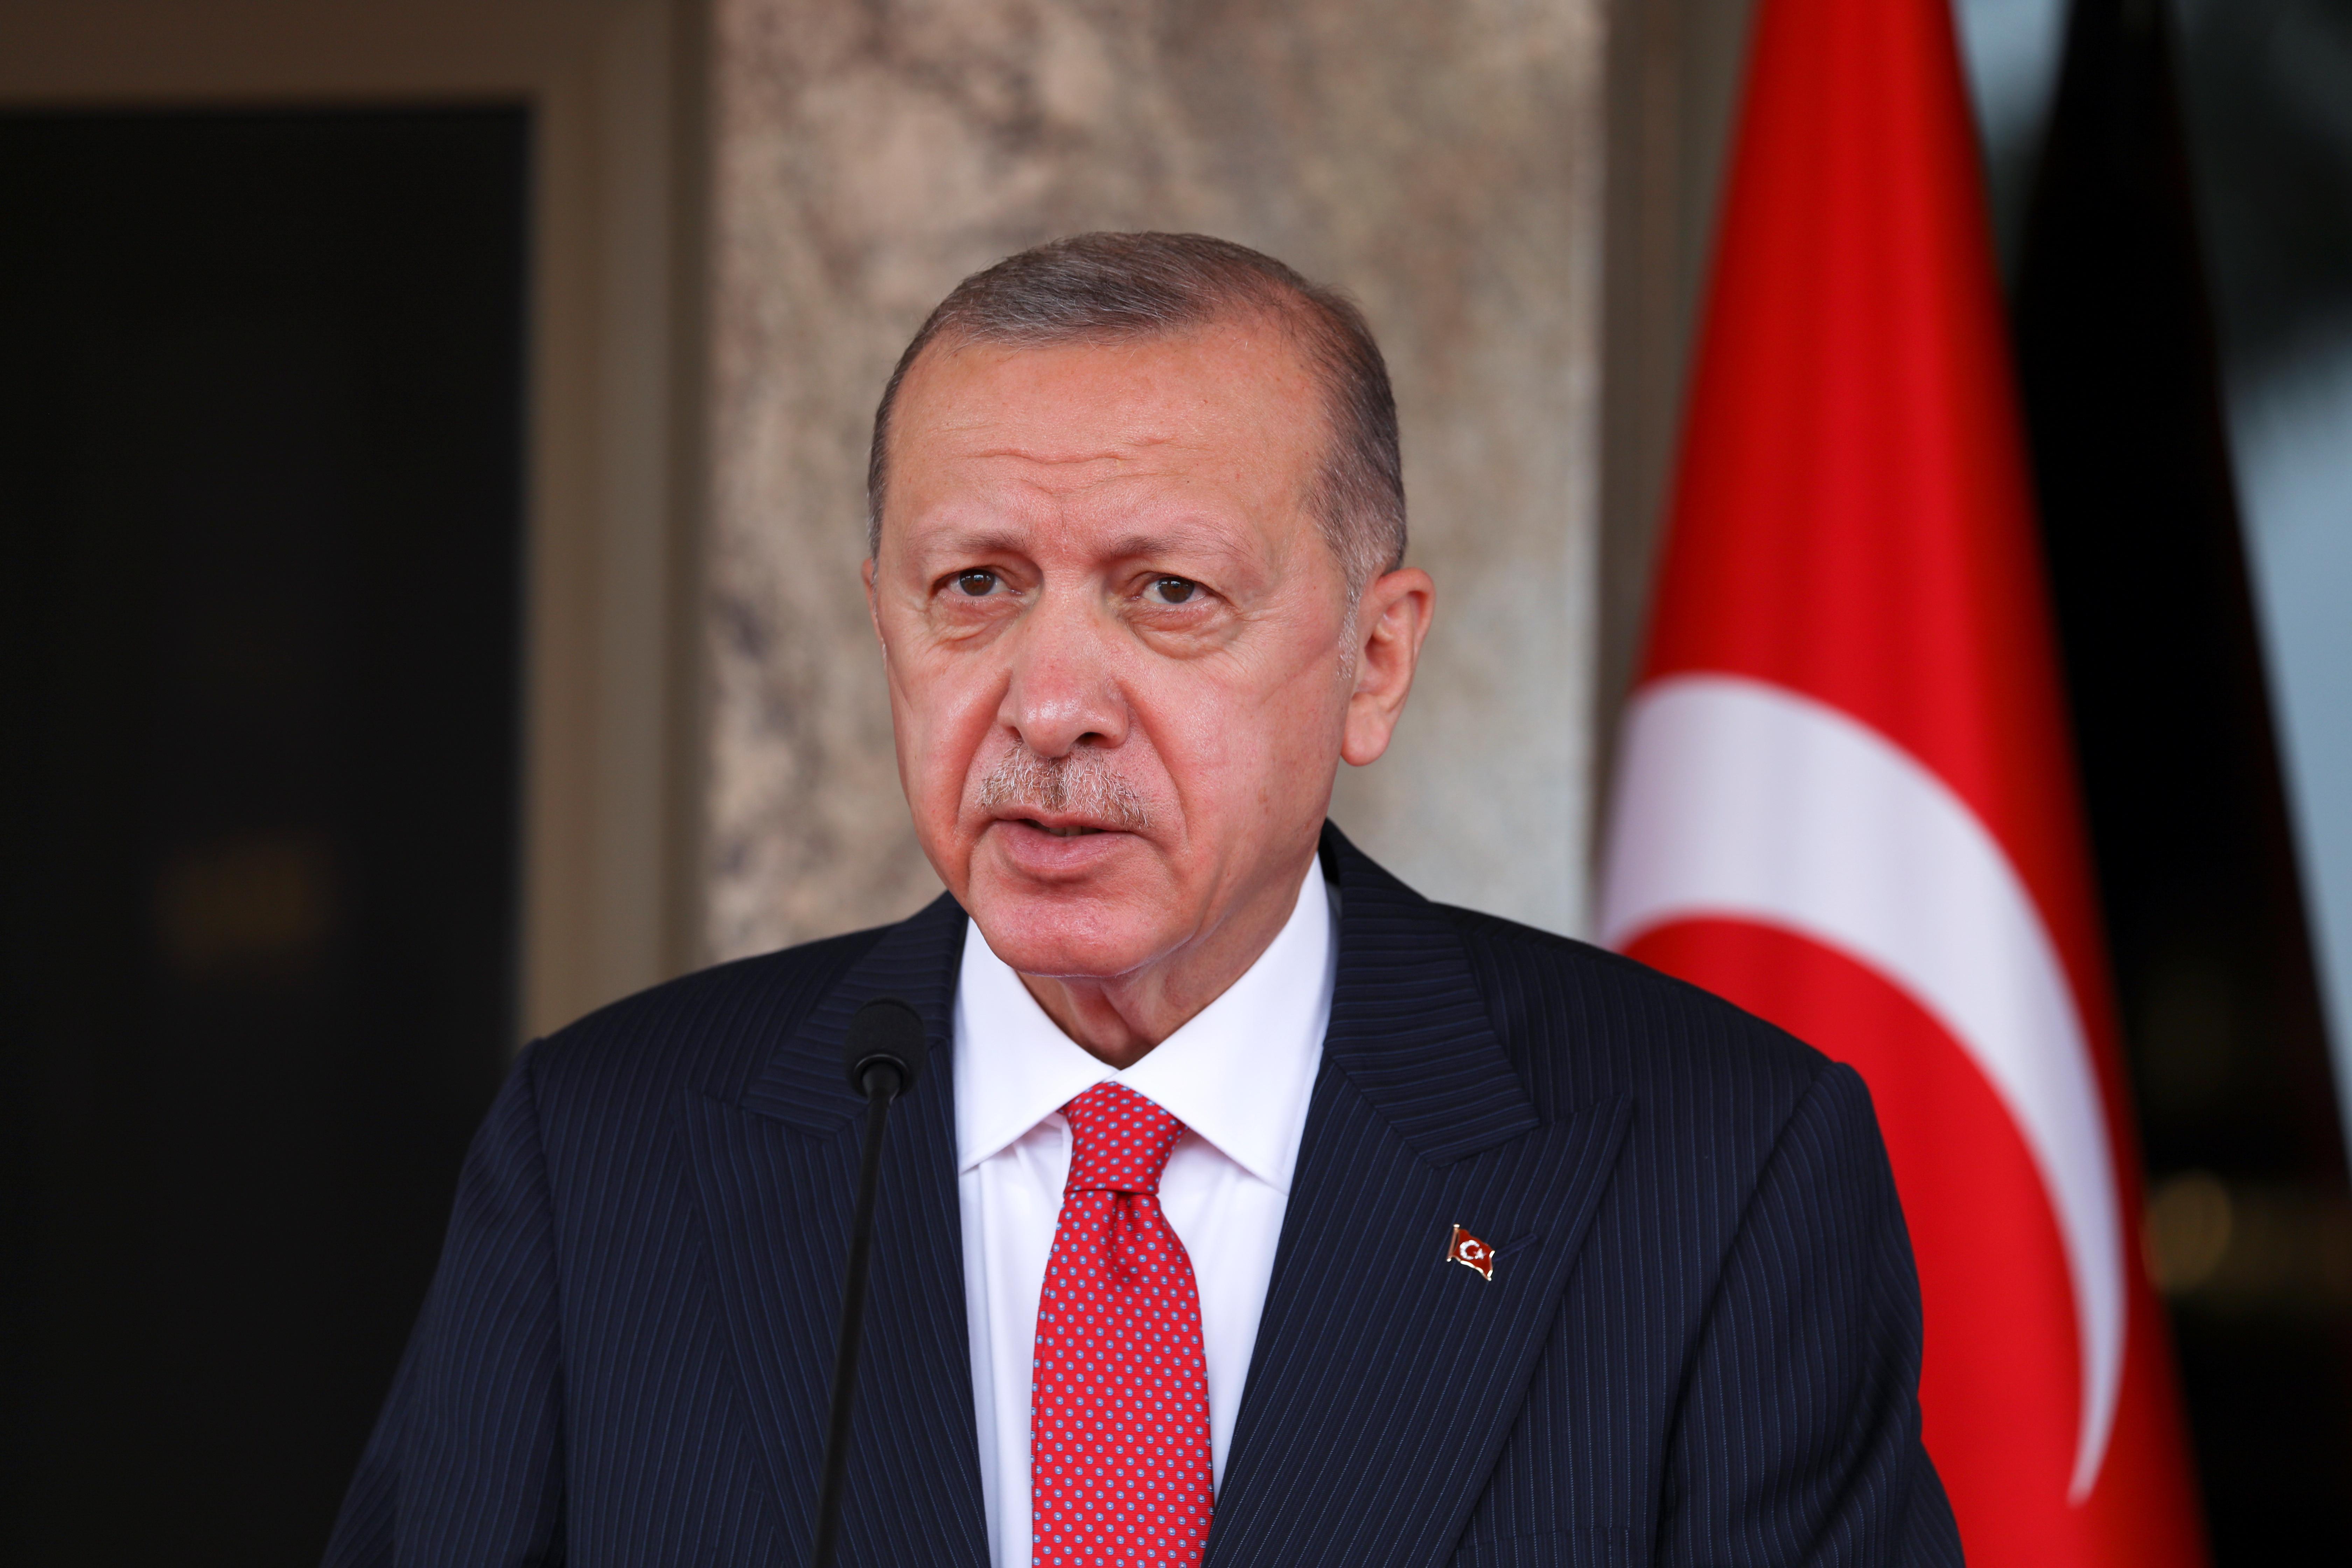 Էրդողանը ՀՀ իշխանություններին կոչ է անում աշխատել Թուրքիայի հետ հարաբերությունների ճանապարհային քարտեզի վրա